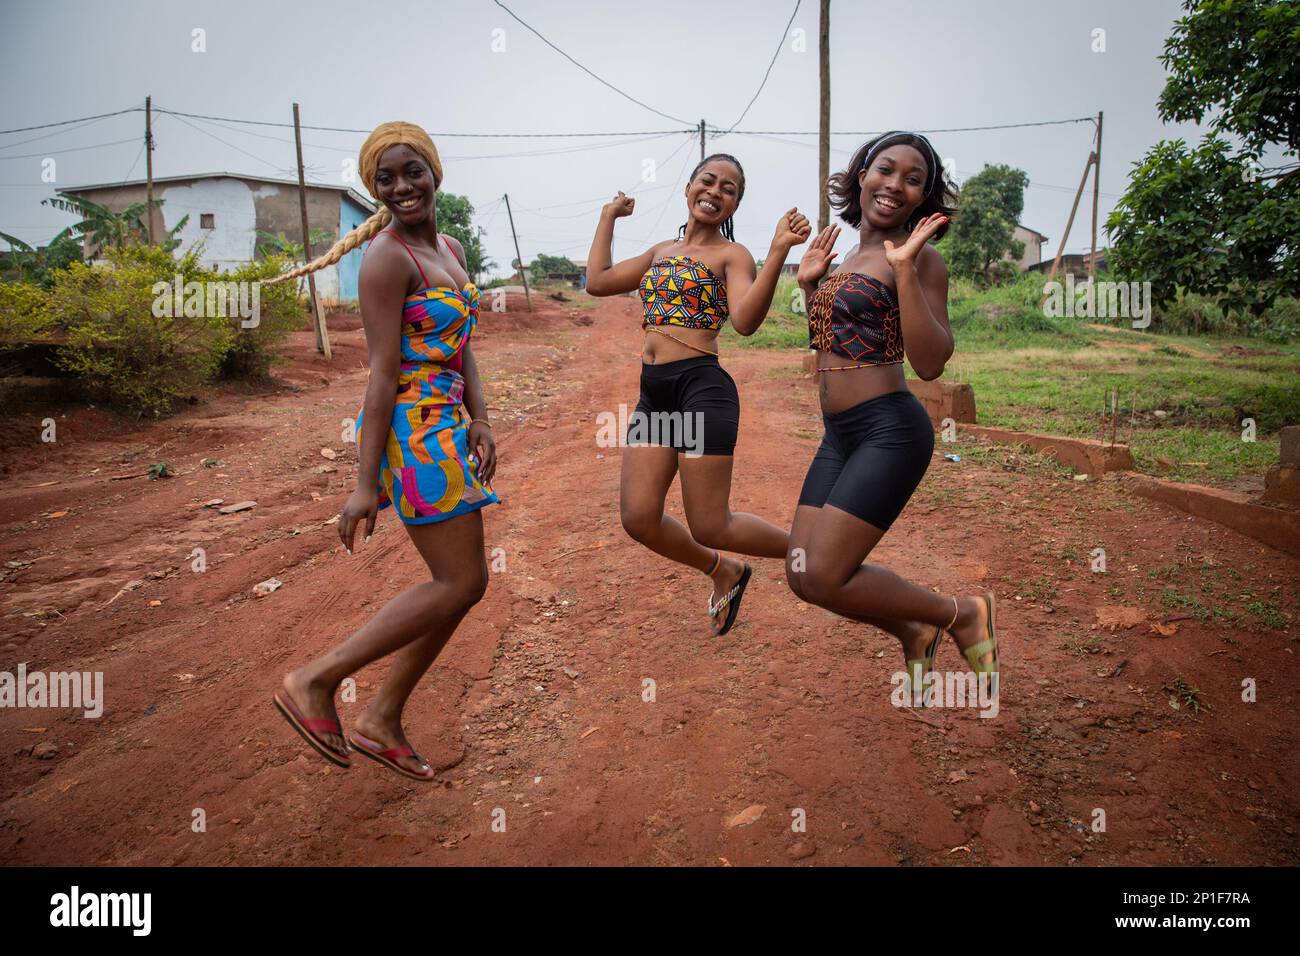 Drei glückliche afrikanische Mädchen springen und lachen, Freundschafts- und Zusammengehörigkeitskonzept Stockfoto